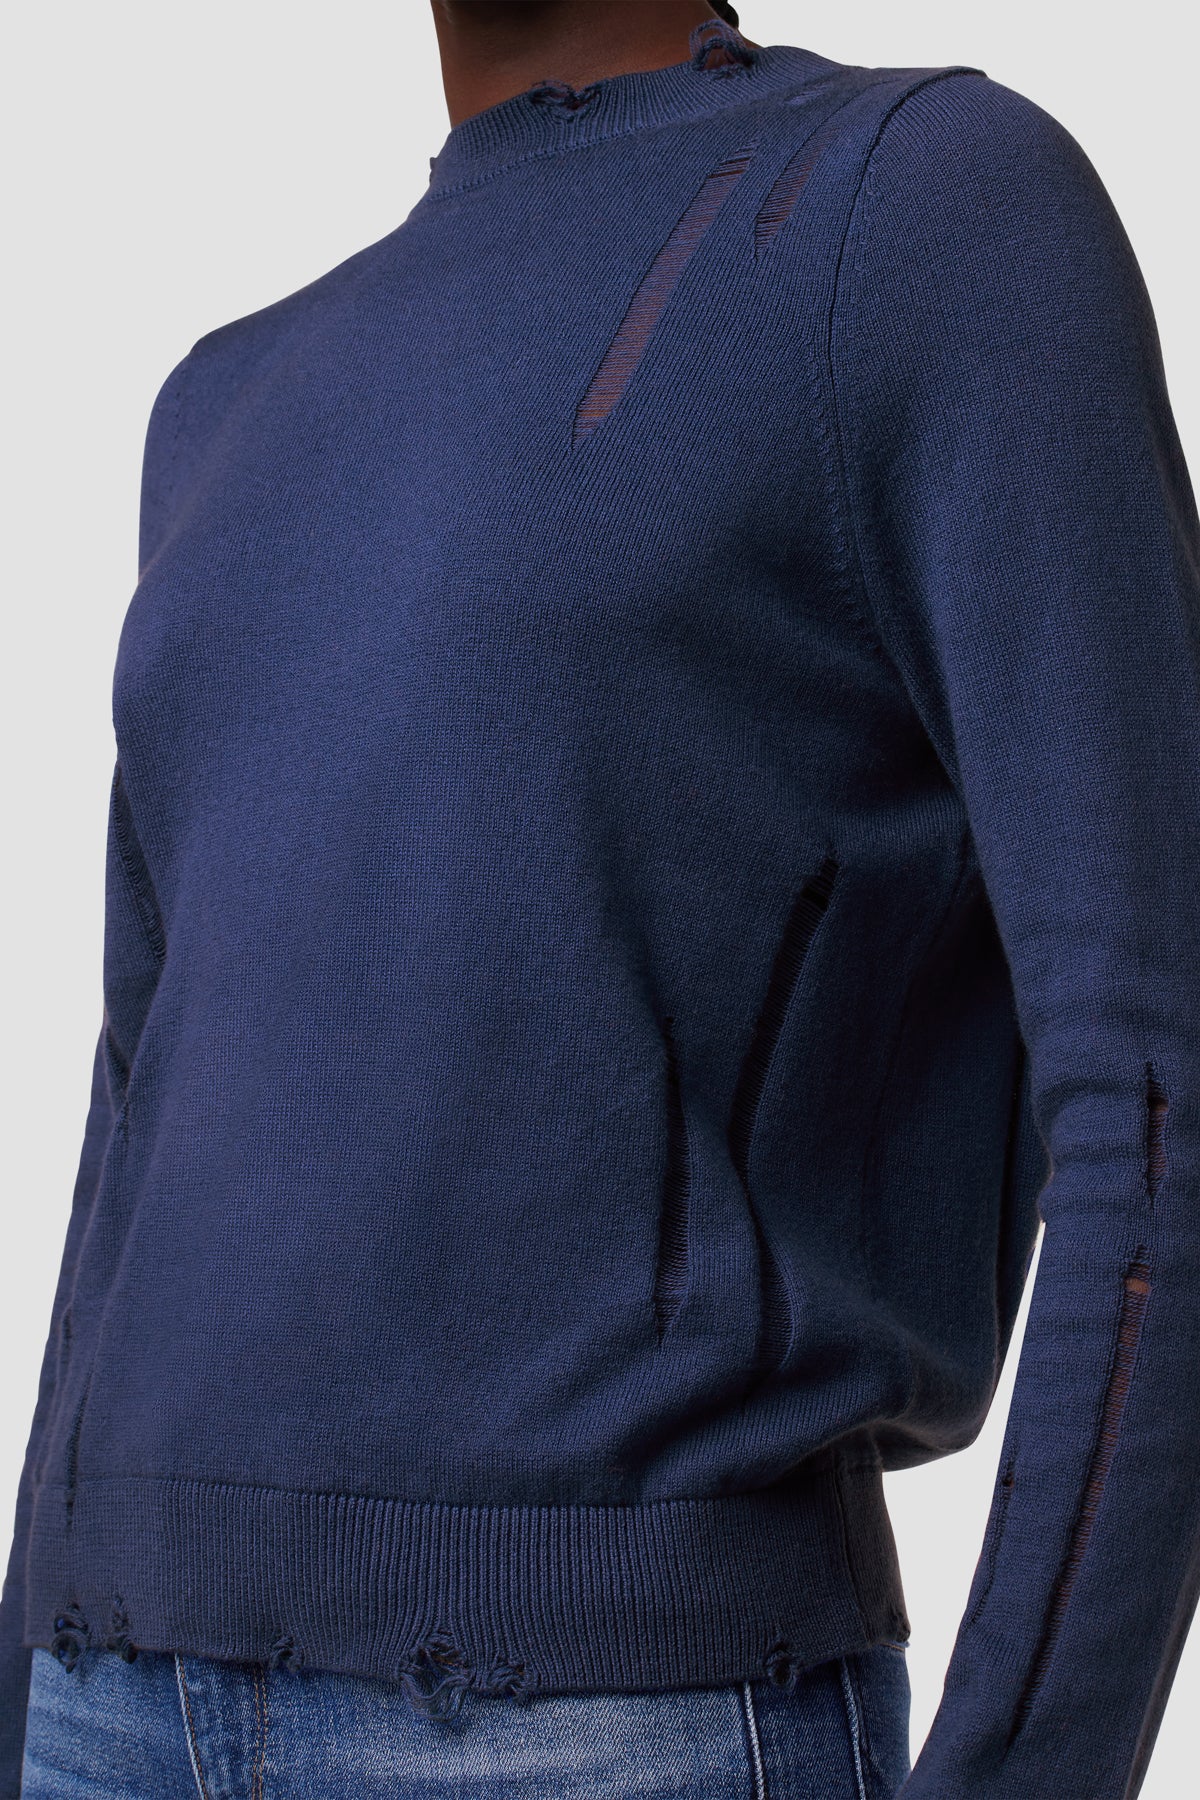 Long Sleeve Twist Back Sweater